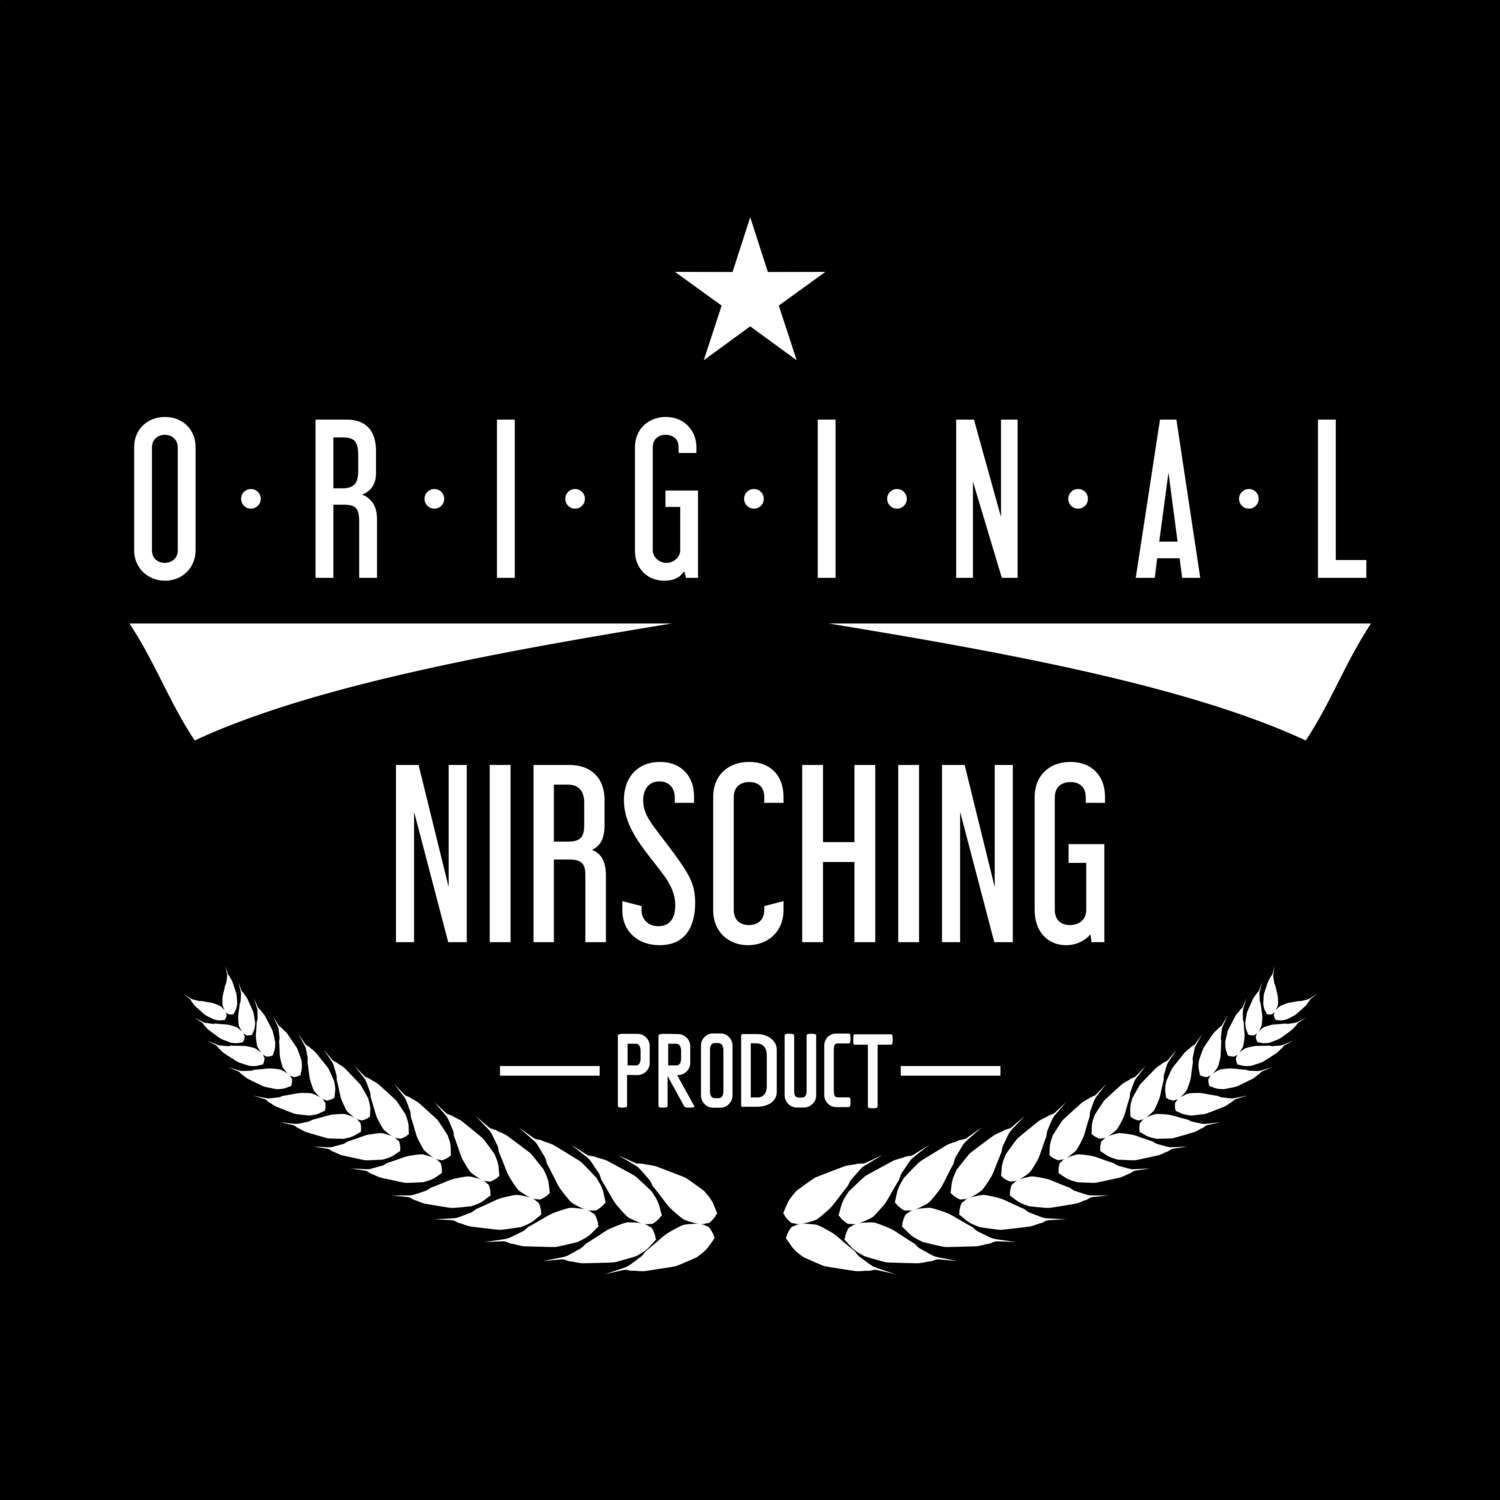 Nirsching T-Shirt »Original Product«